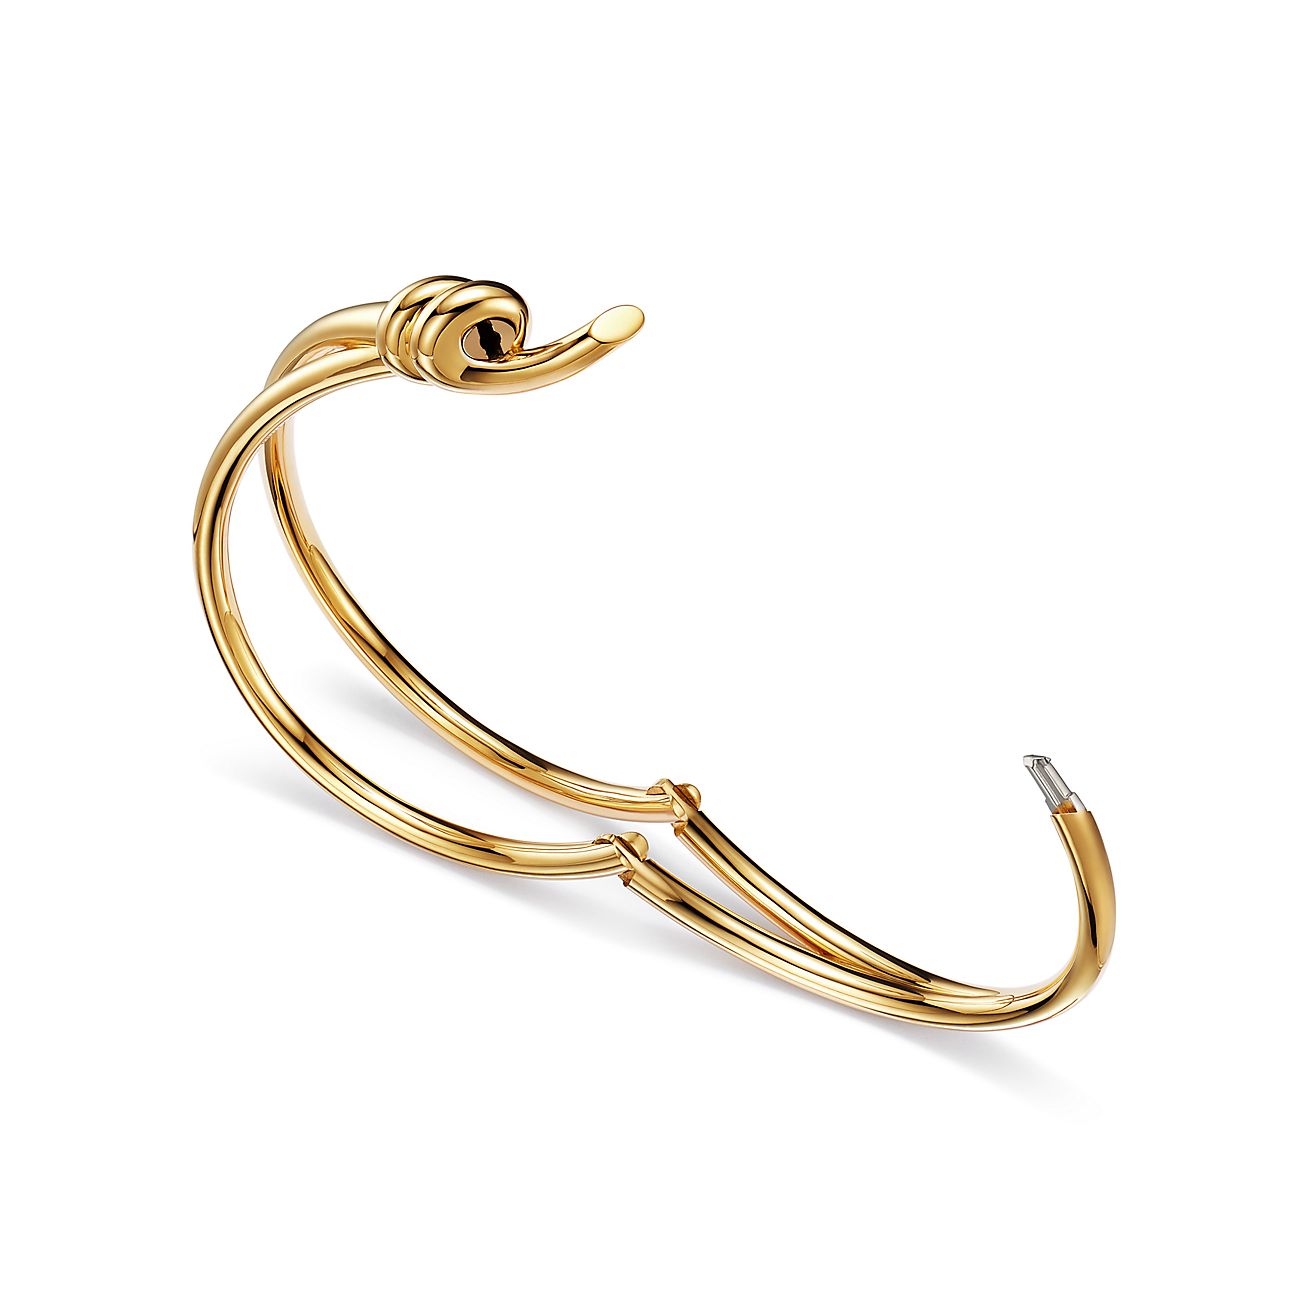 Tiffany Knot Double Row Hinged Bangle in Yellow Gold | Tiffany & Co.